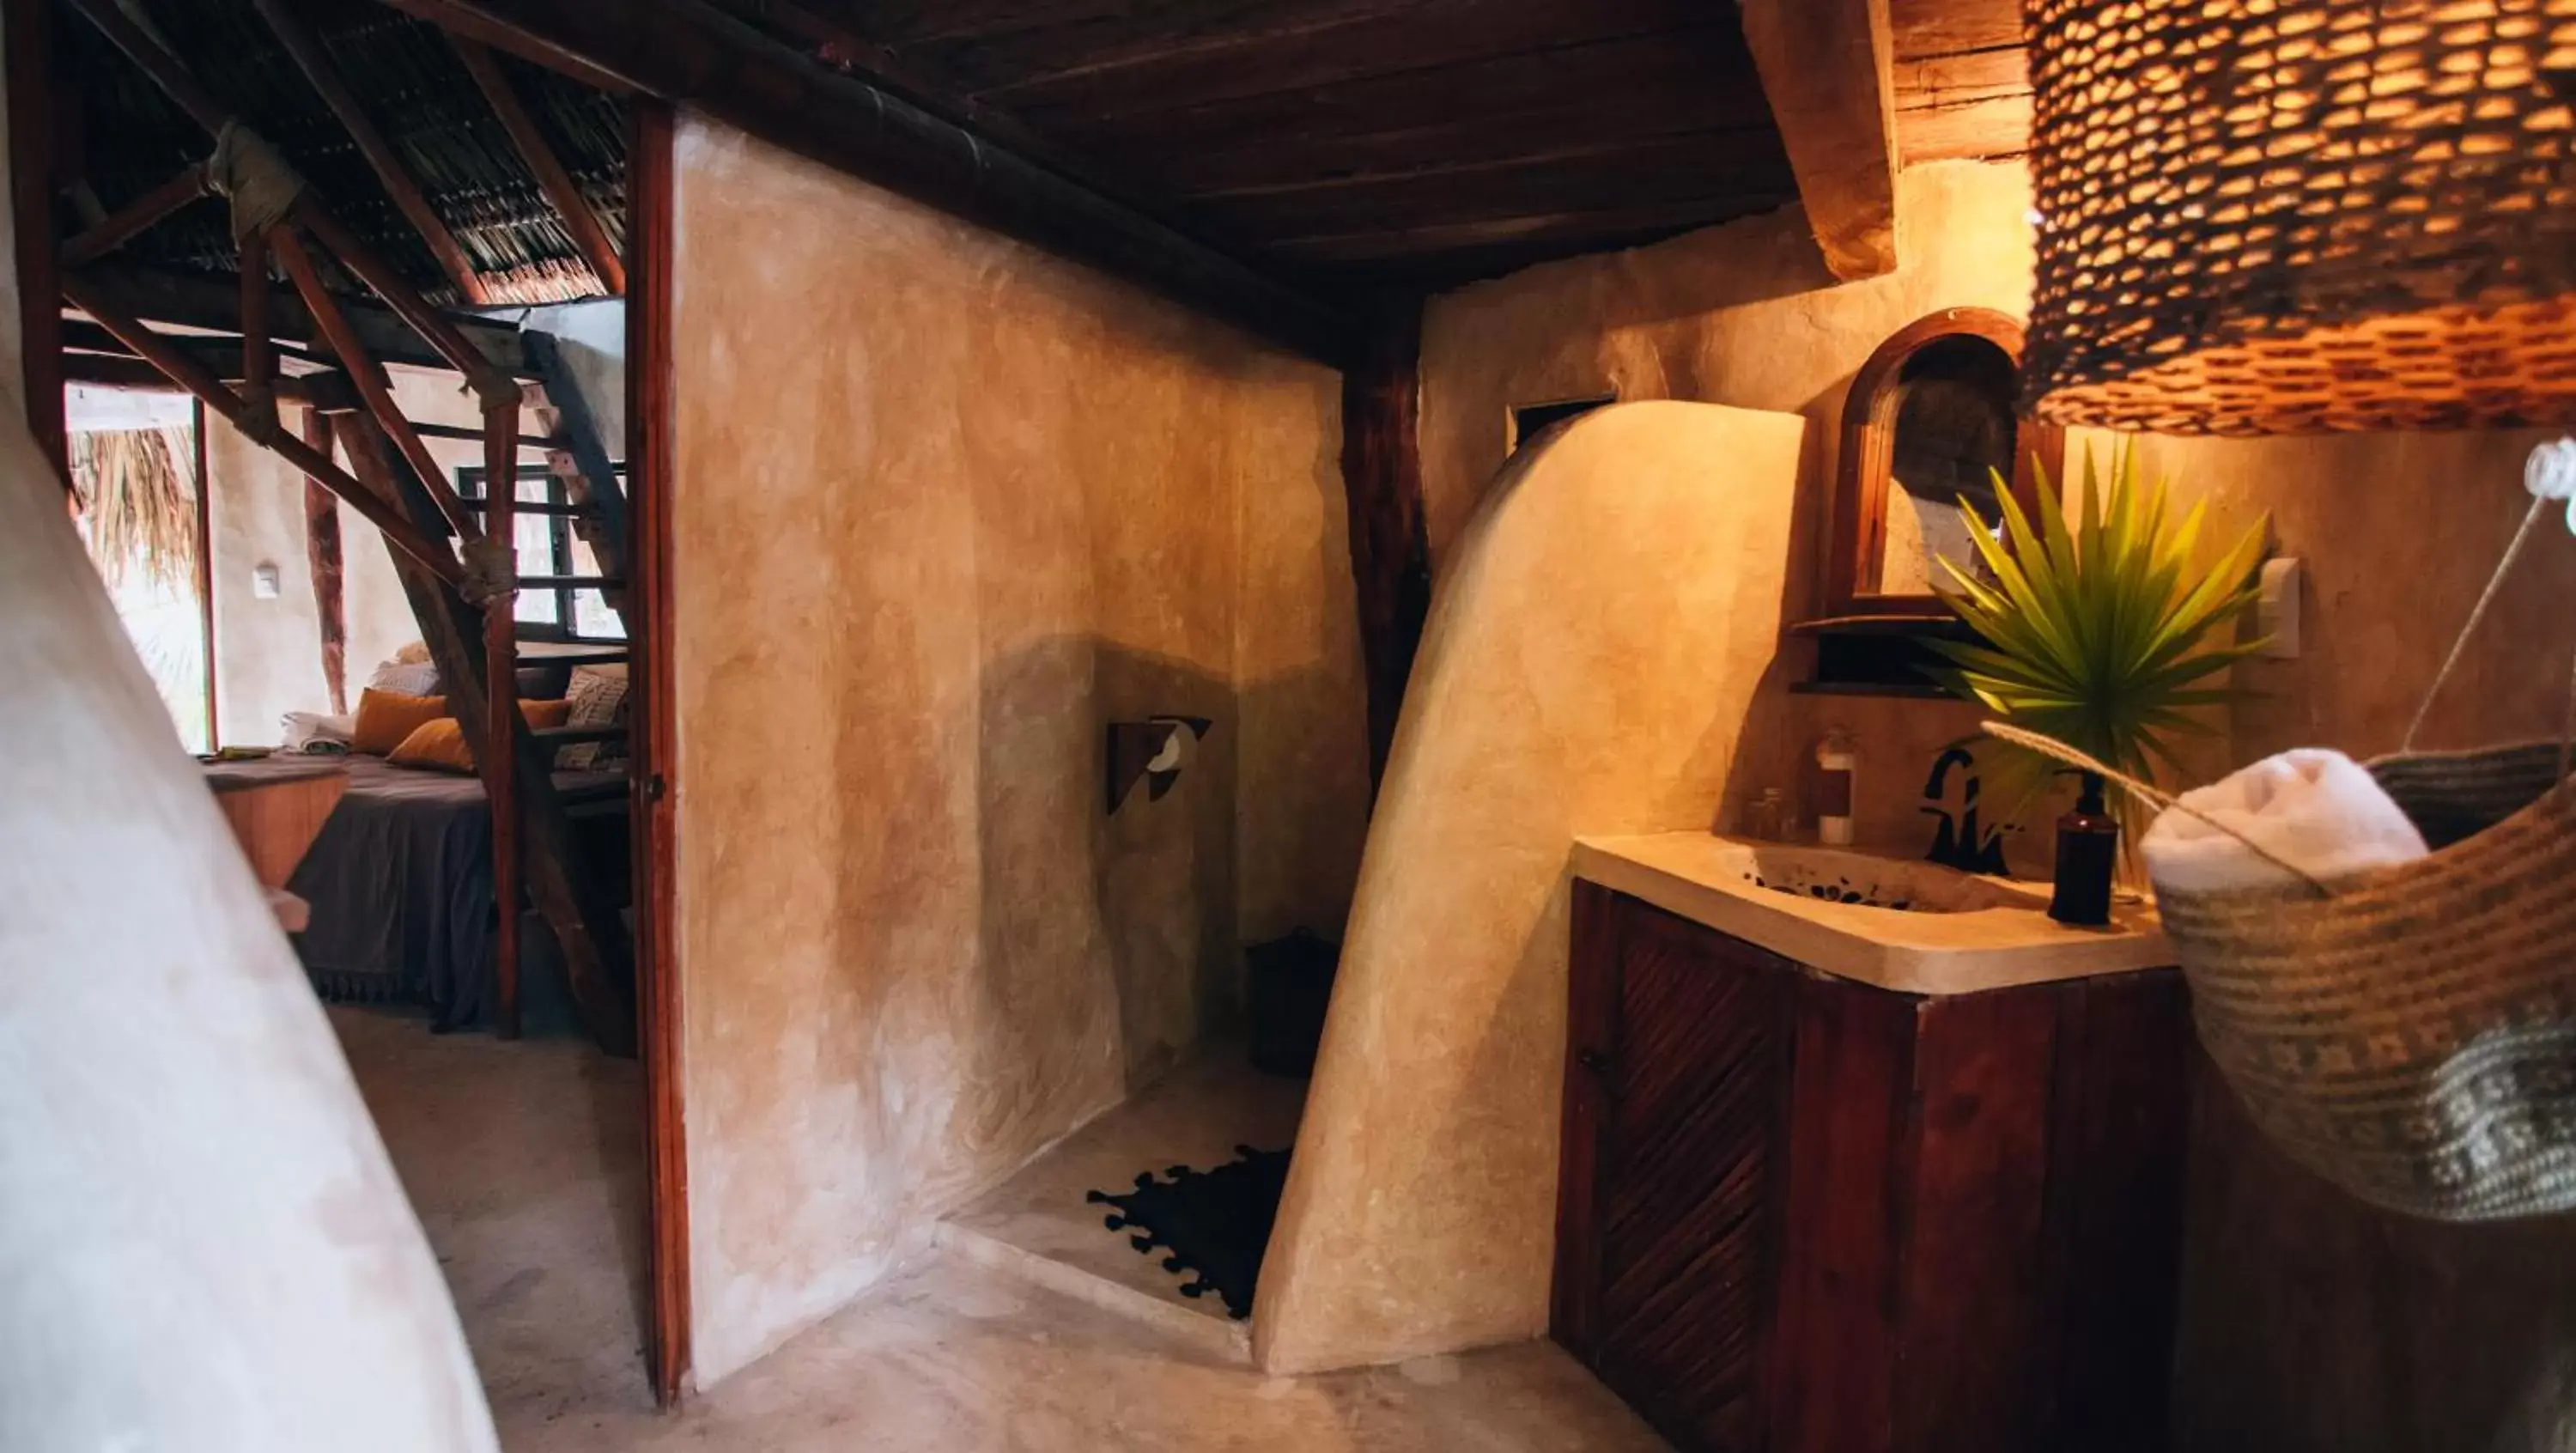 Bathroom in Ikal Tulum Hotel